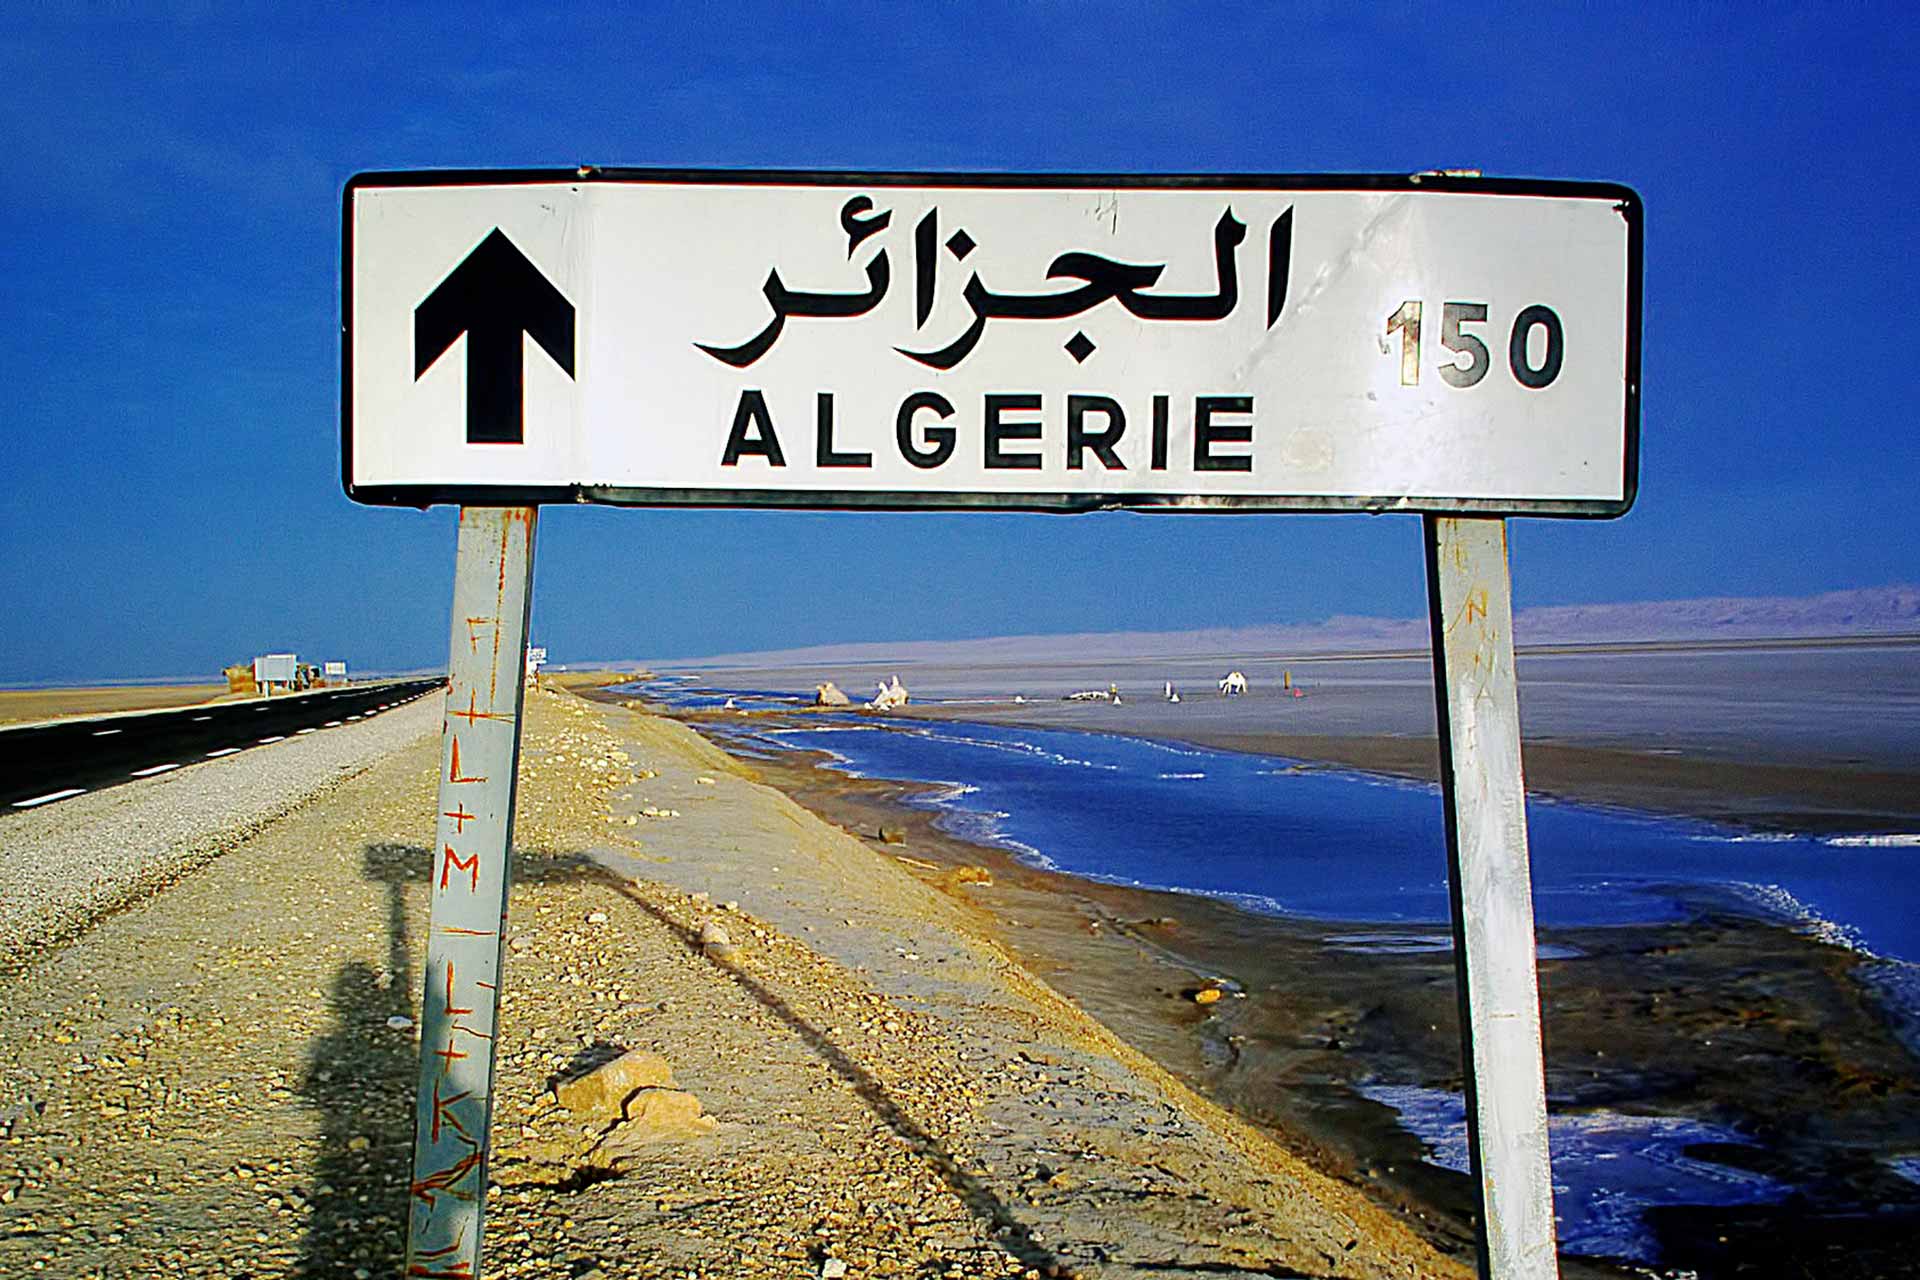 Algeria Algerie Africa